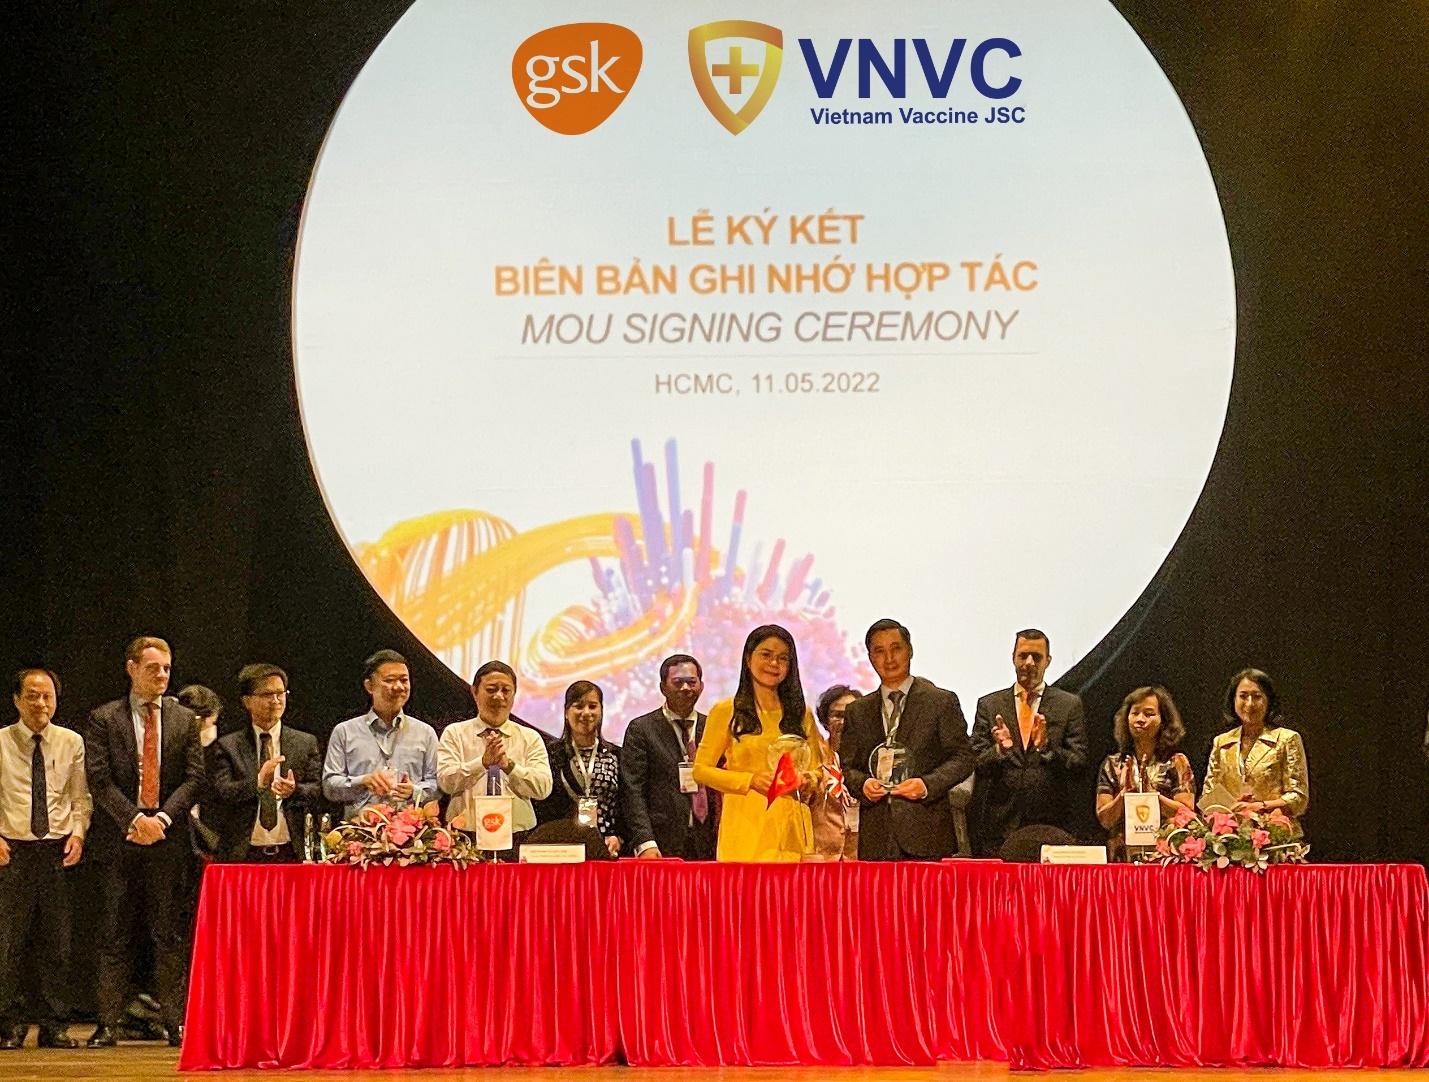 GSK và VNVC ký hợp tác đưa thêm nhiều vắc xin mới, số lượng lớn về Việt Nam - Ảnh 1.